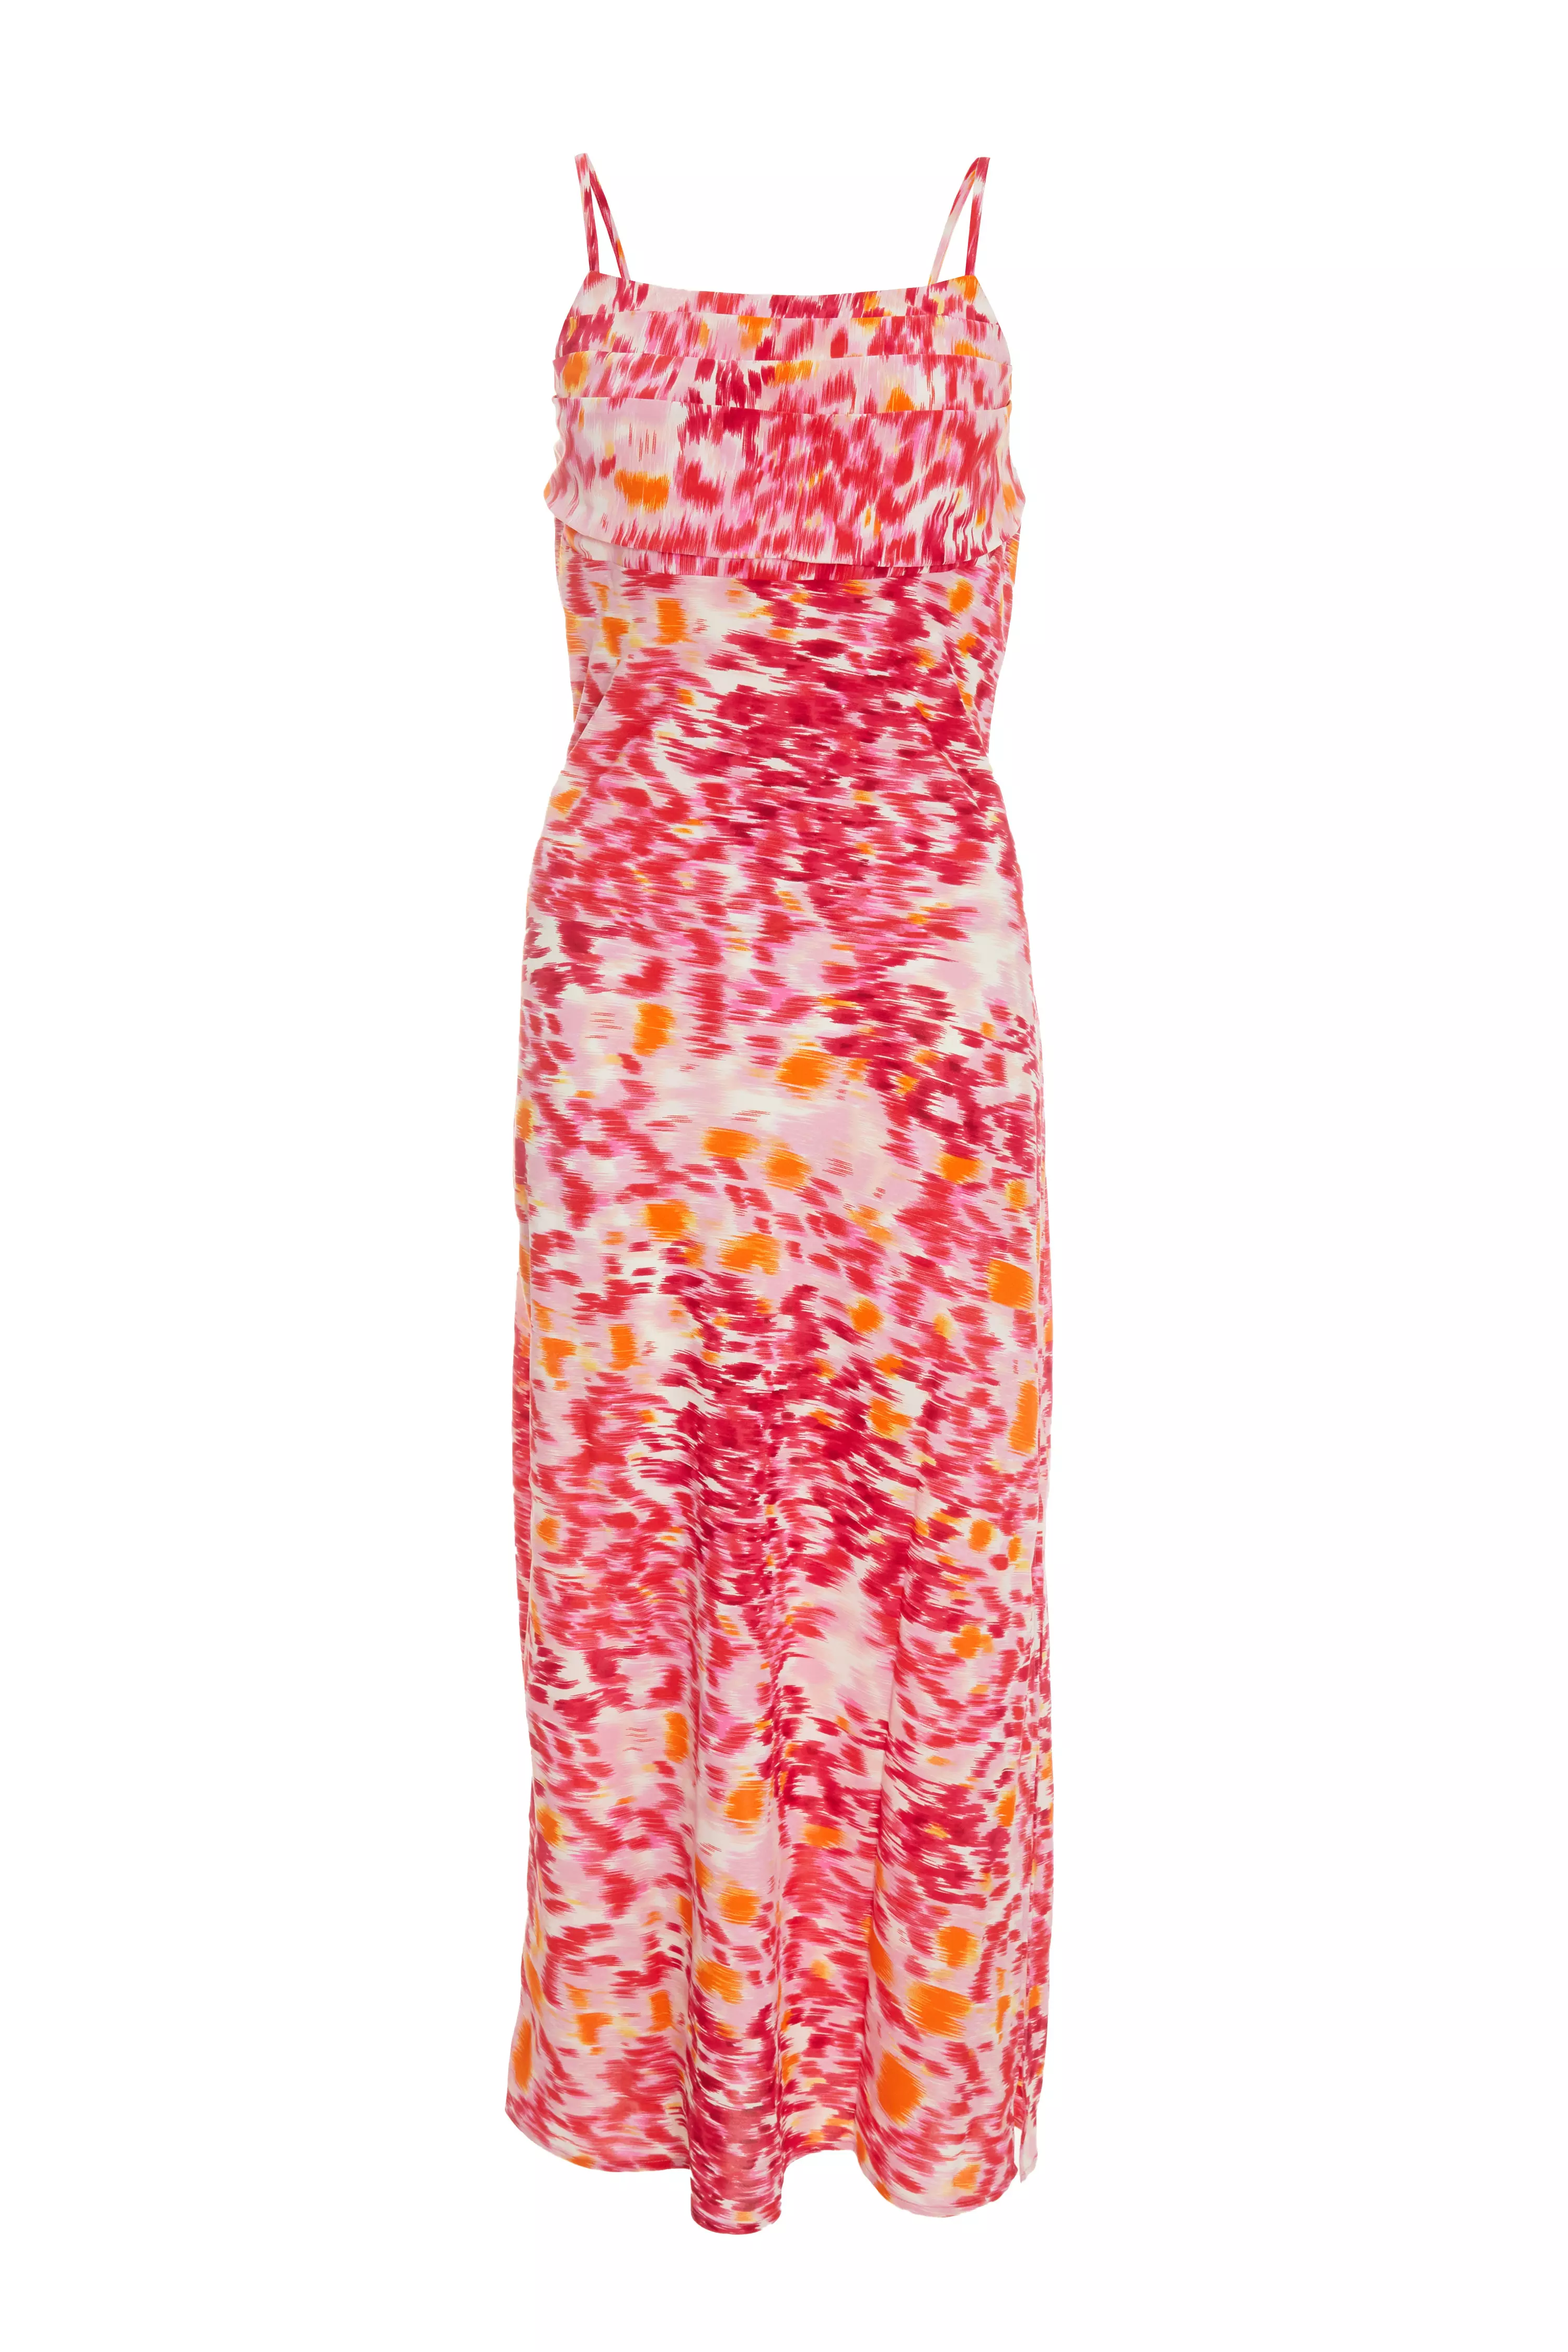 Pink Brush Stroke Midaxi Dress - QUIZ Clothing